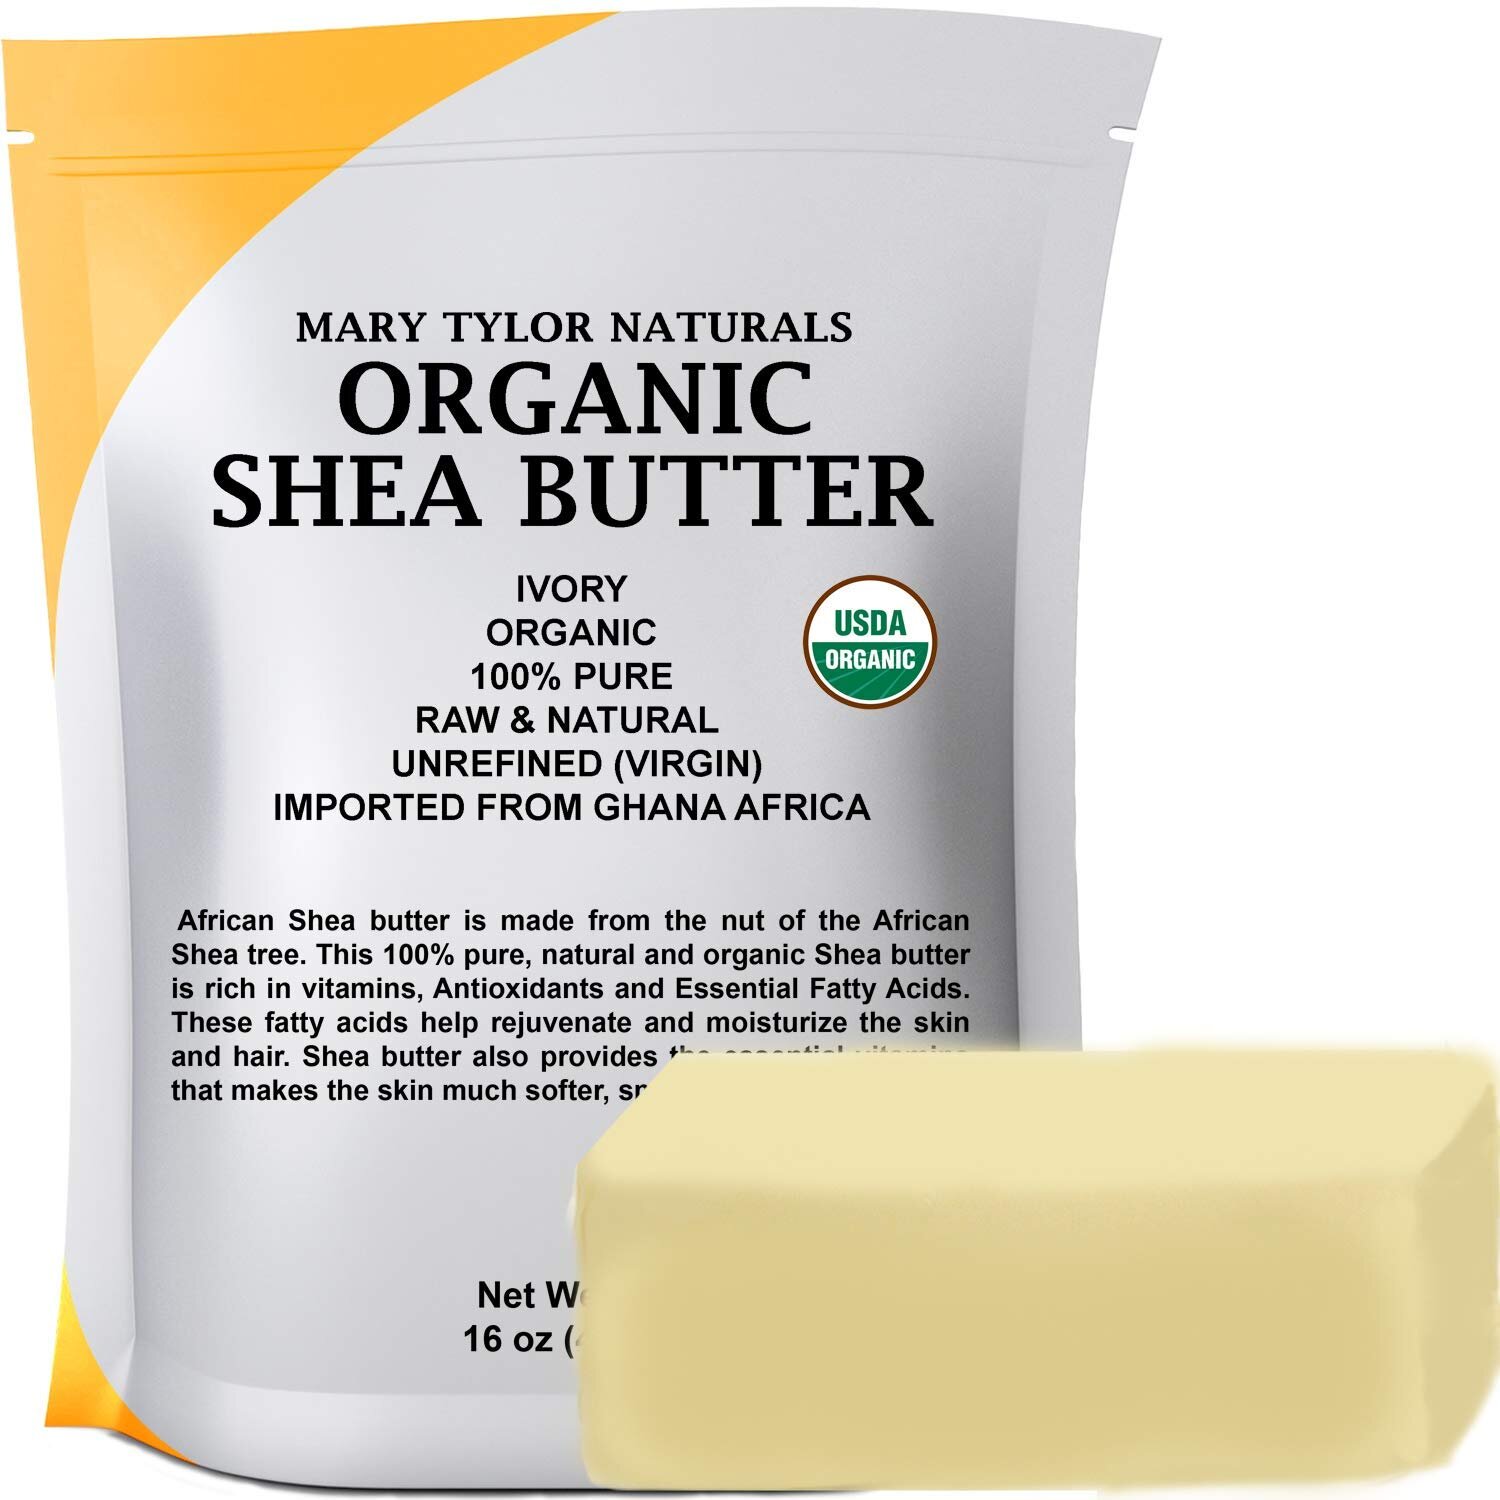 Organic Shea Butter.jpg